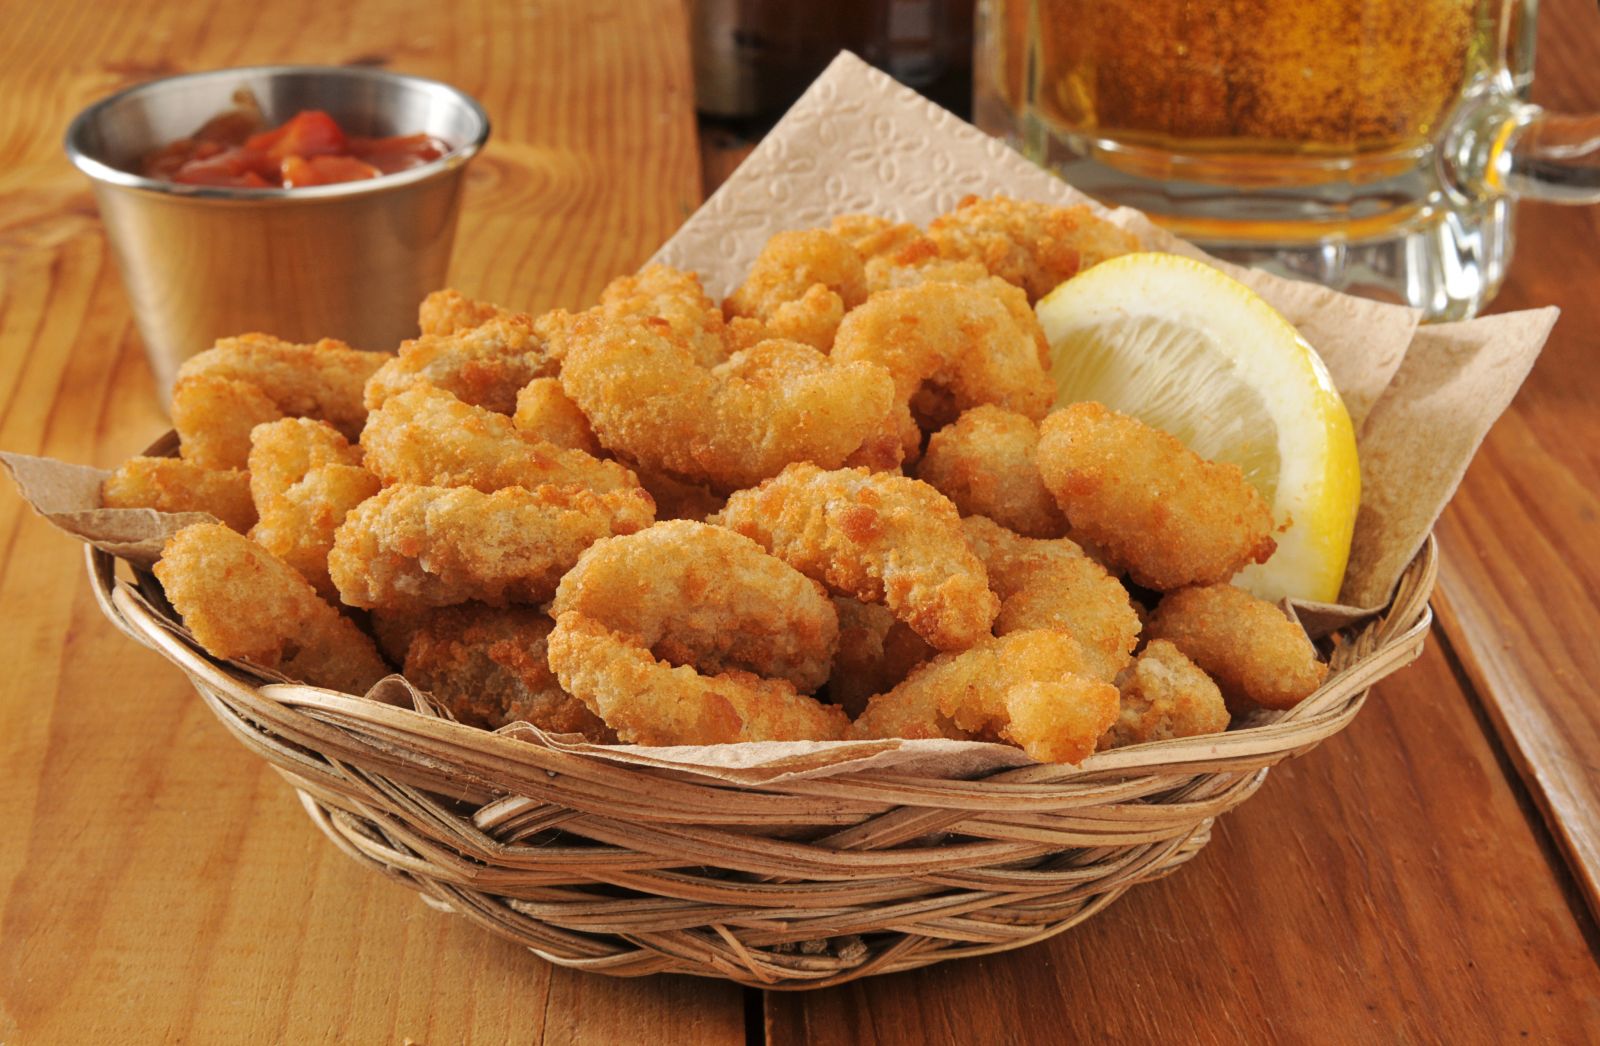 This seafood restaurant serves baskets of fried shrimp